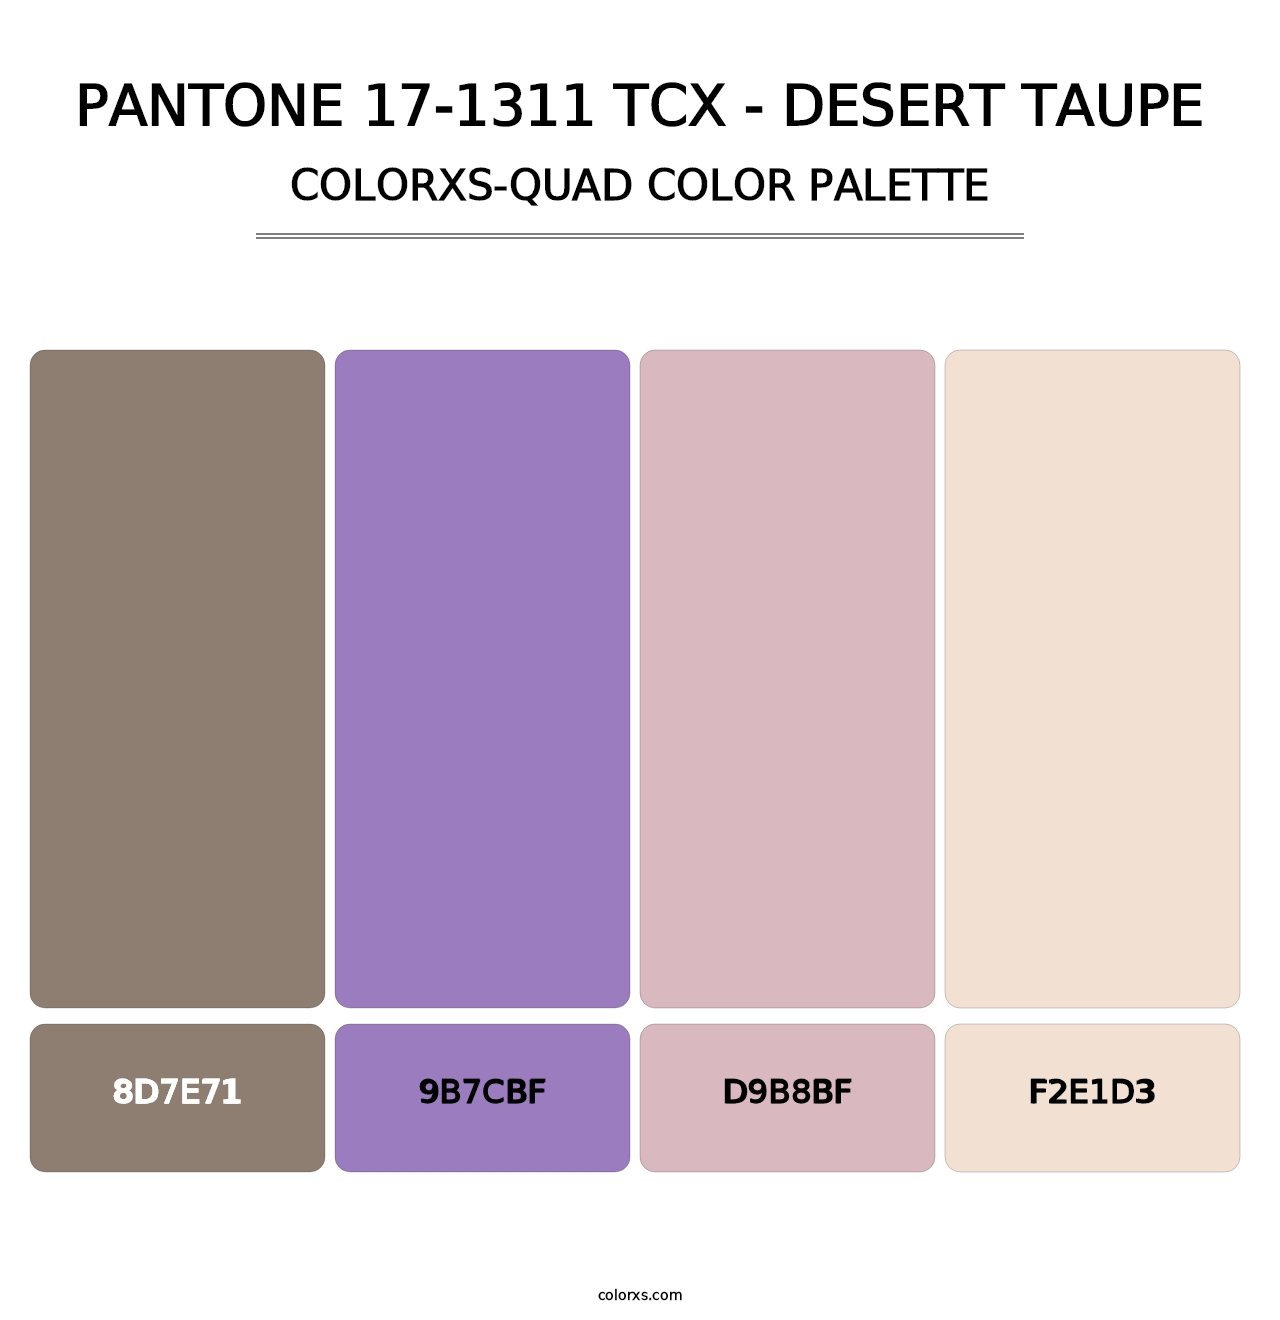 PANTONE 17-1311 TCX - Desert Taupe - Colorxs Quad Palette